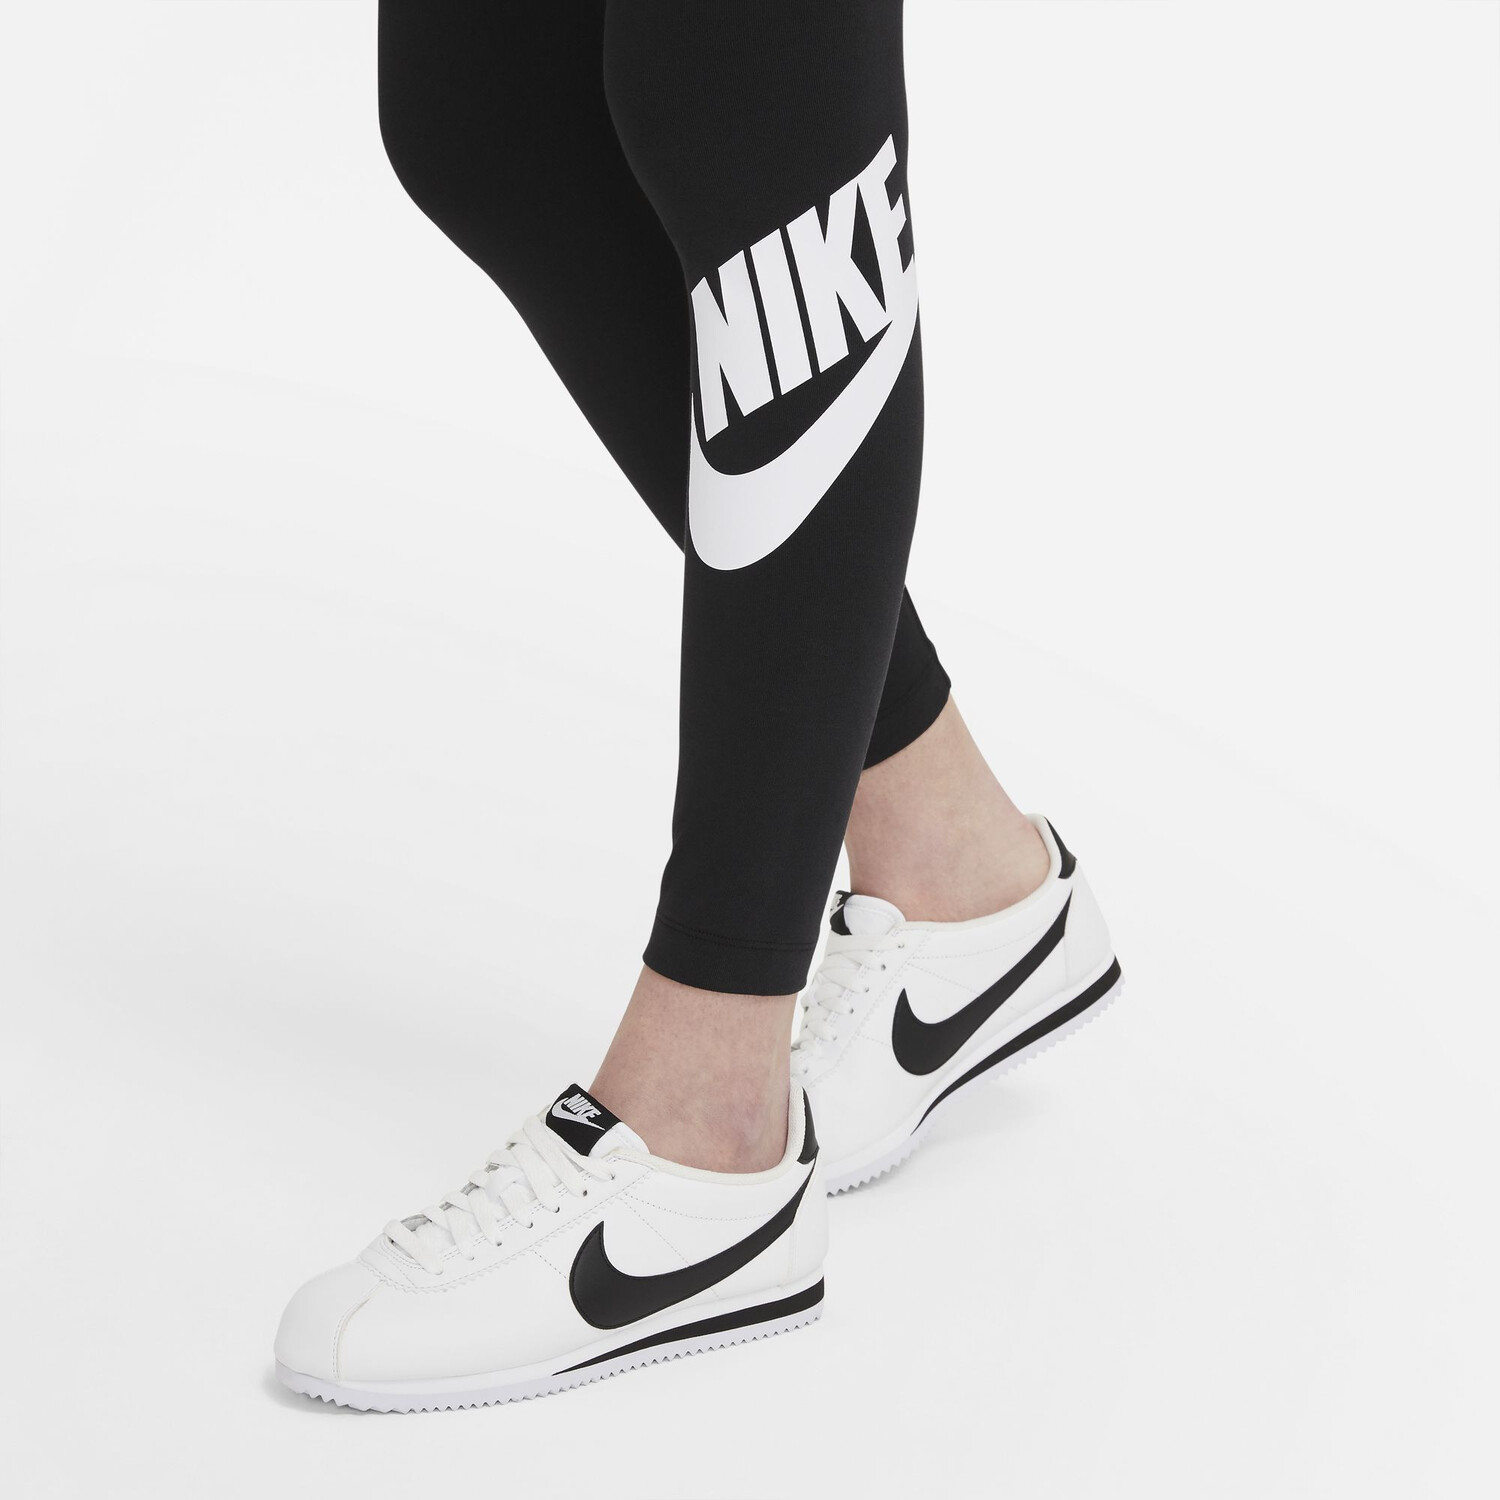 https://www.foot.fr/92792-pdt_1500/legging-femme-nike-essential-noir-blanc.jpg